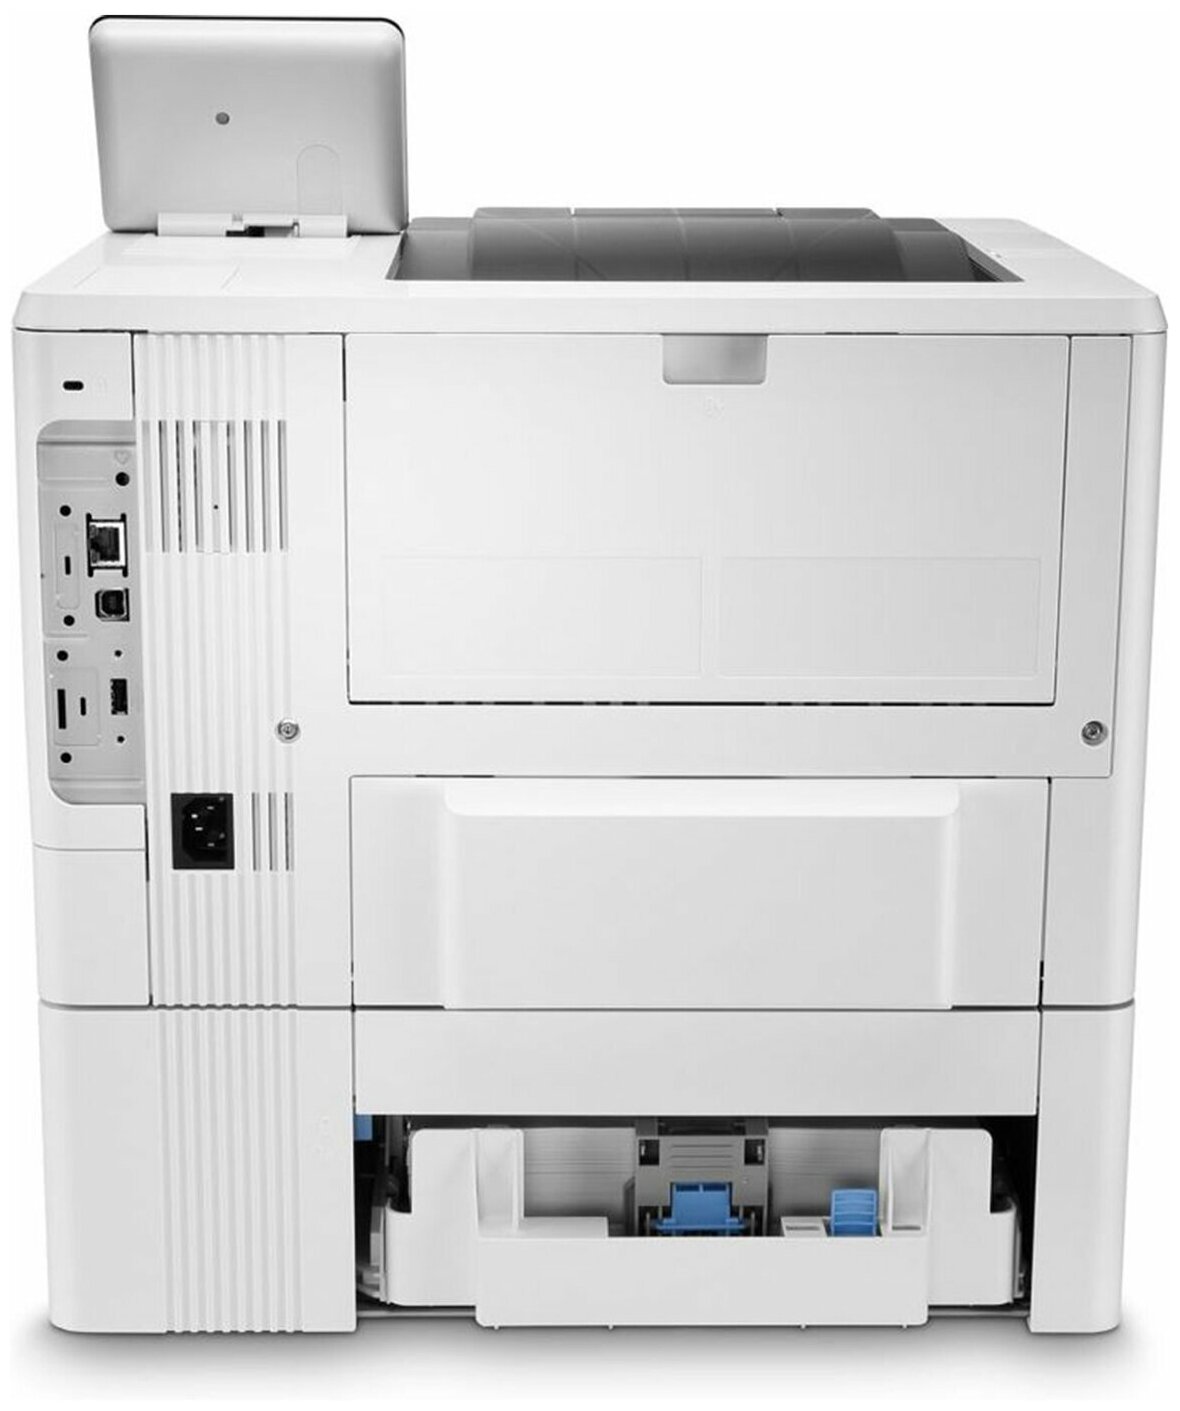 Принтер лазерный HP LaserJet Enterprise M507x лазерный, цвет: белый [1pv88a] - фото №3